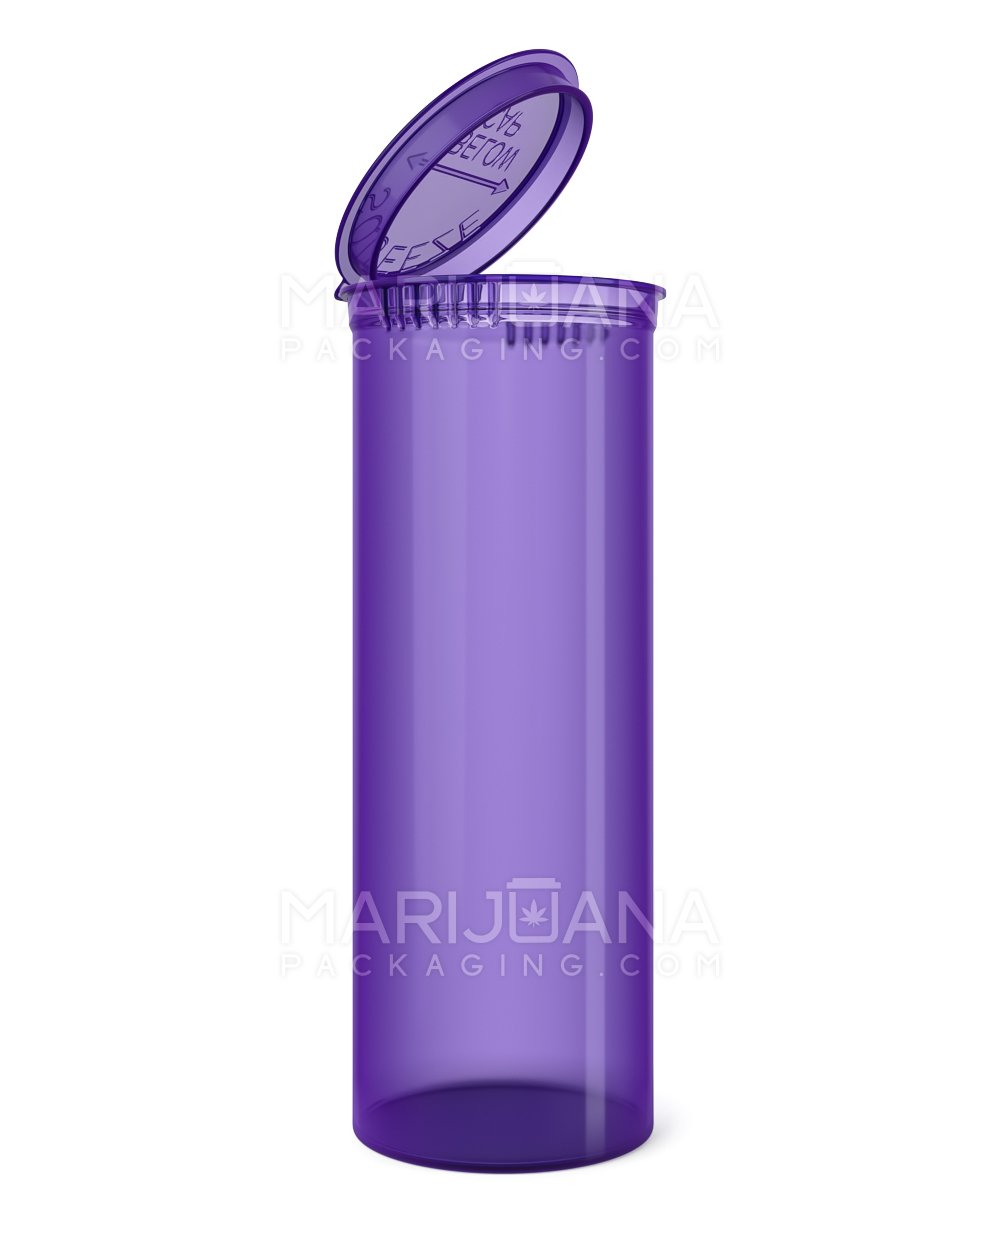 Child Resistant | Transparent Purple Pop Top Bottles | 60dr - 14g - 75 Count - 1